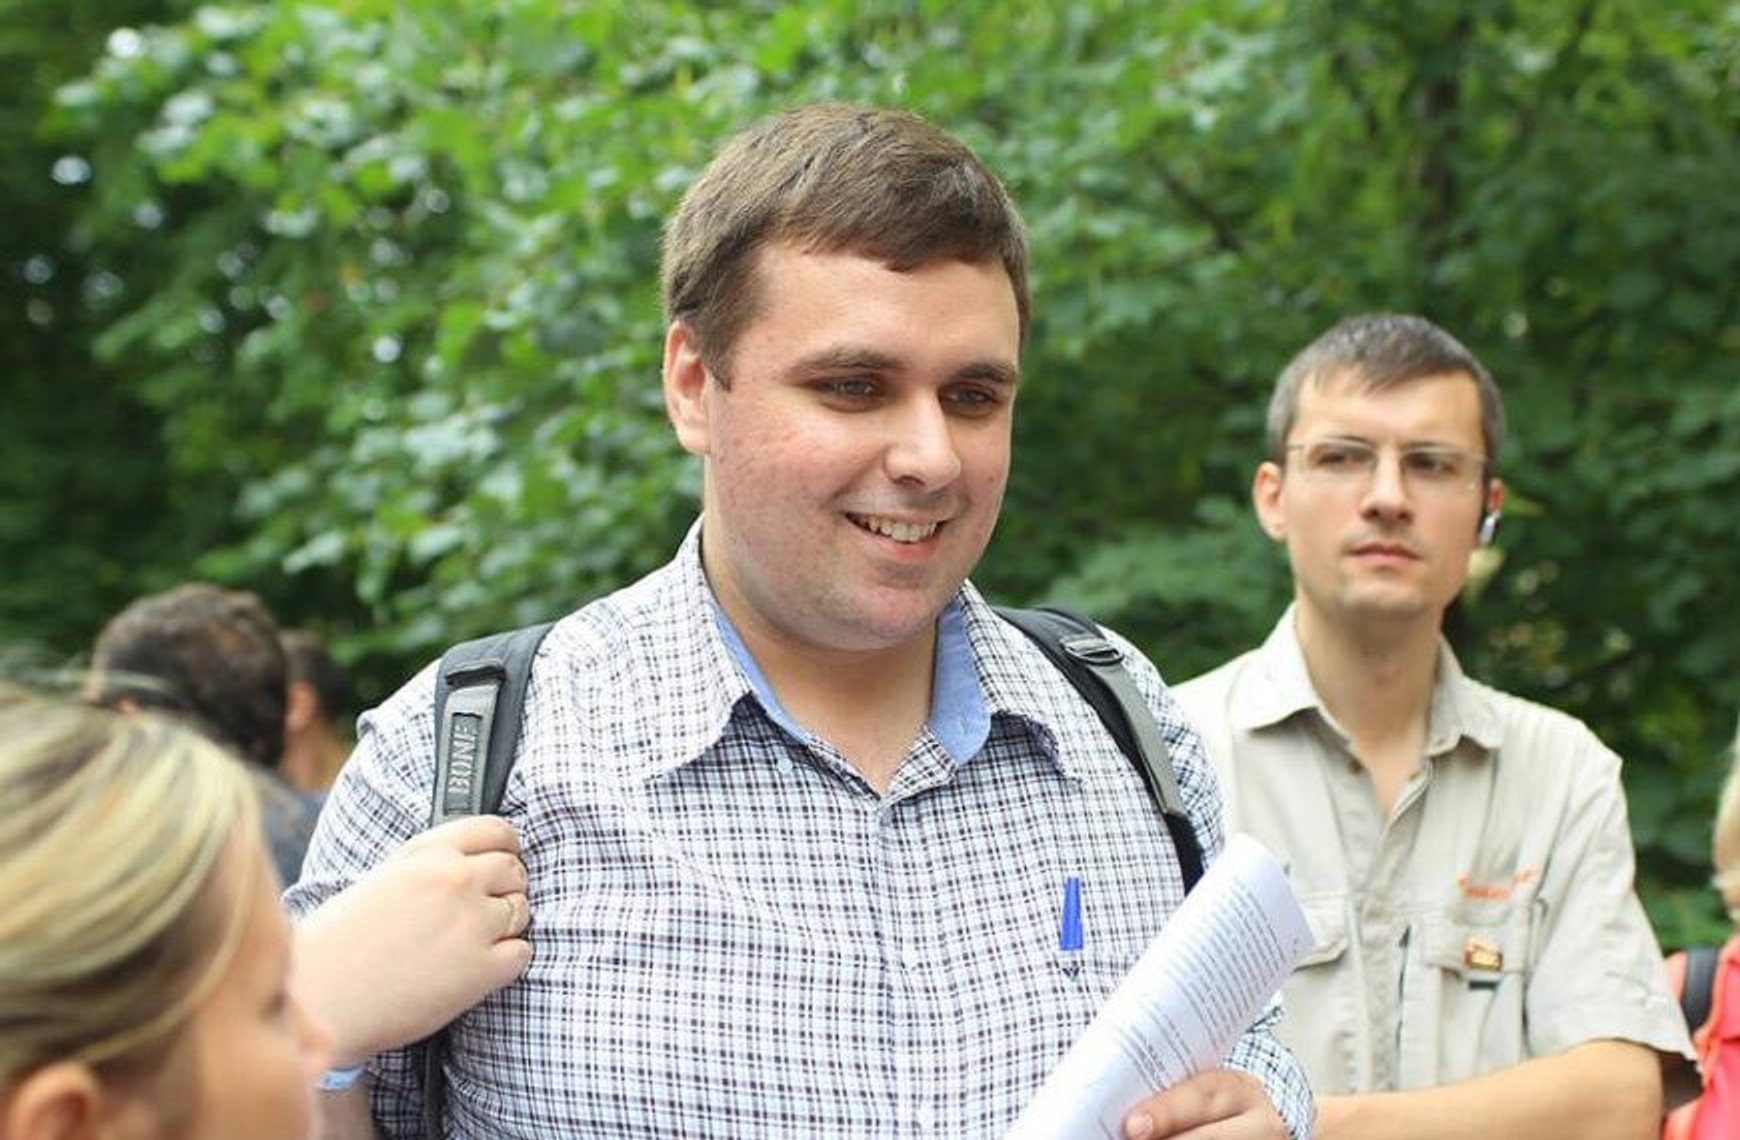 СК зняв звинувачення з Костянтина Янкаускас по «санітарному справі». Раніше мундеп оголосив про свою відмову балотуватися в депутати Держдуми